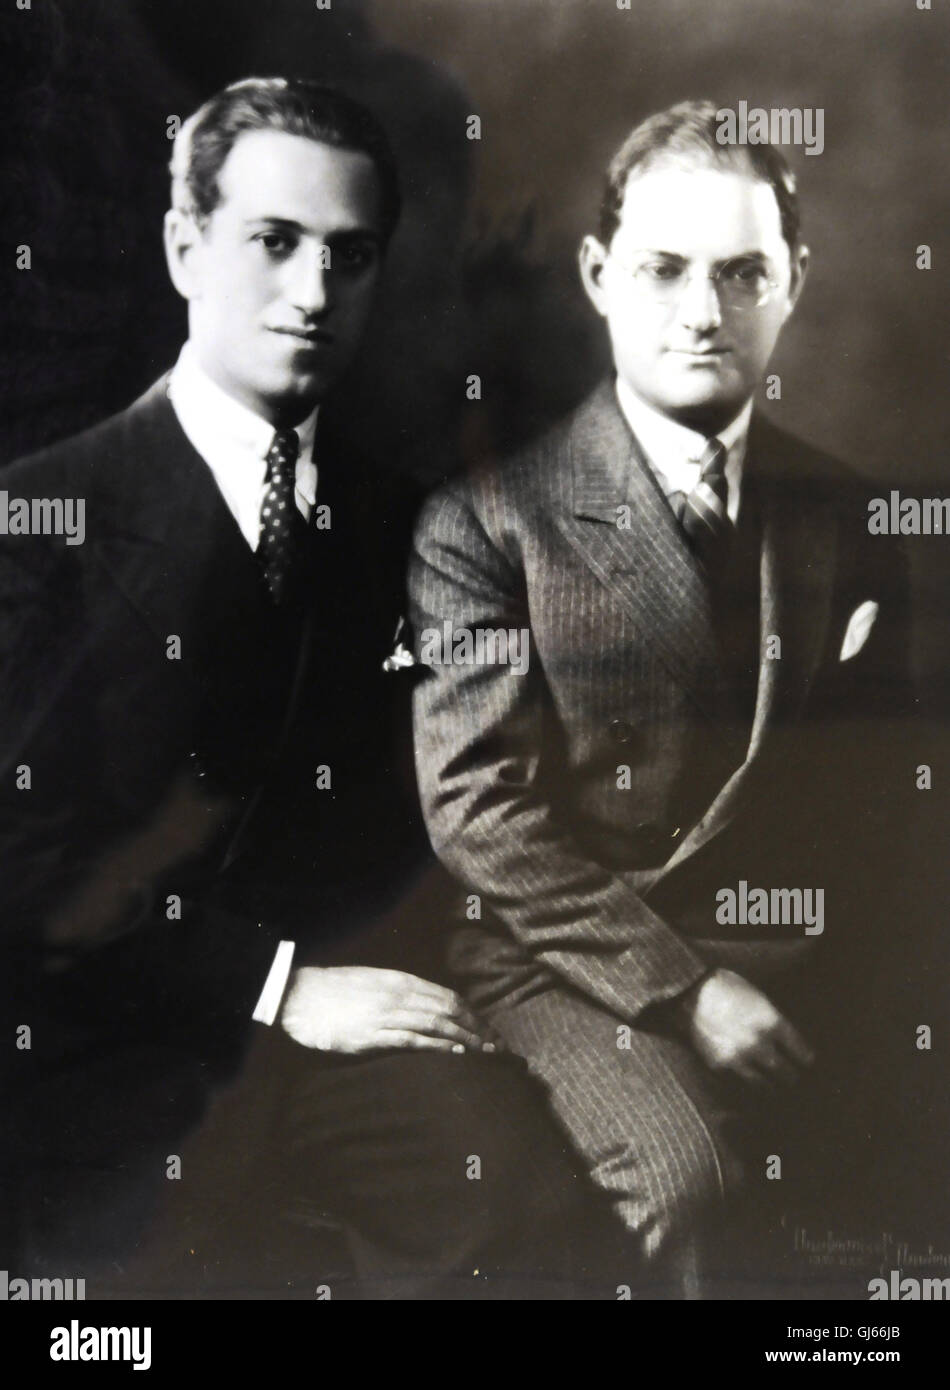 George und Ira Gershwin, Brüder und Musiker Stockfoto